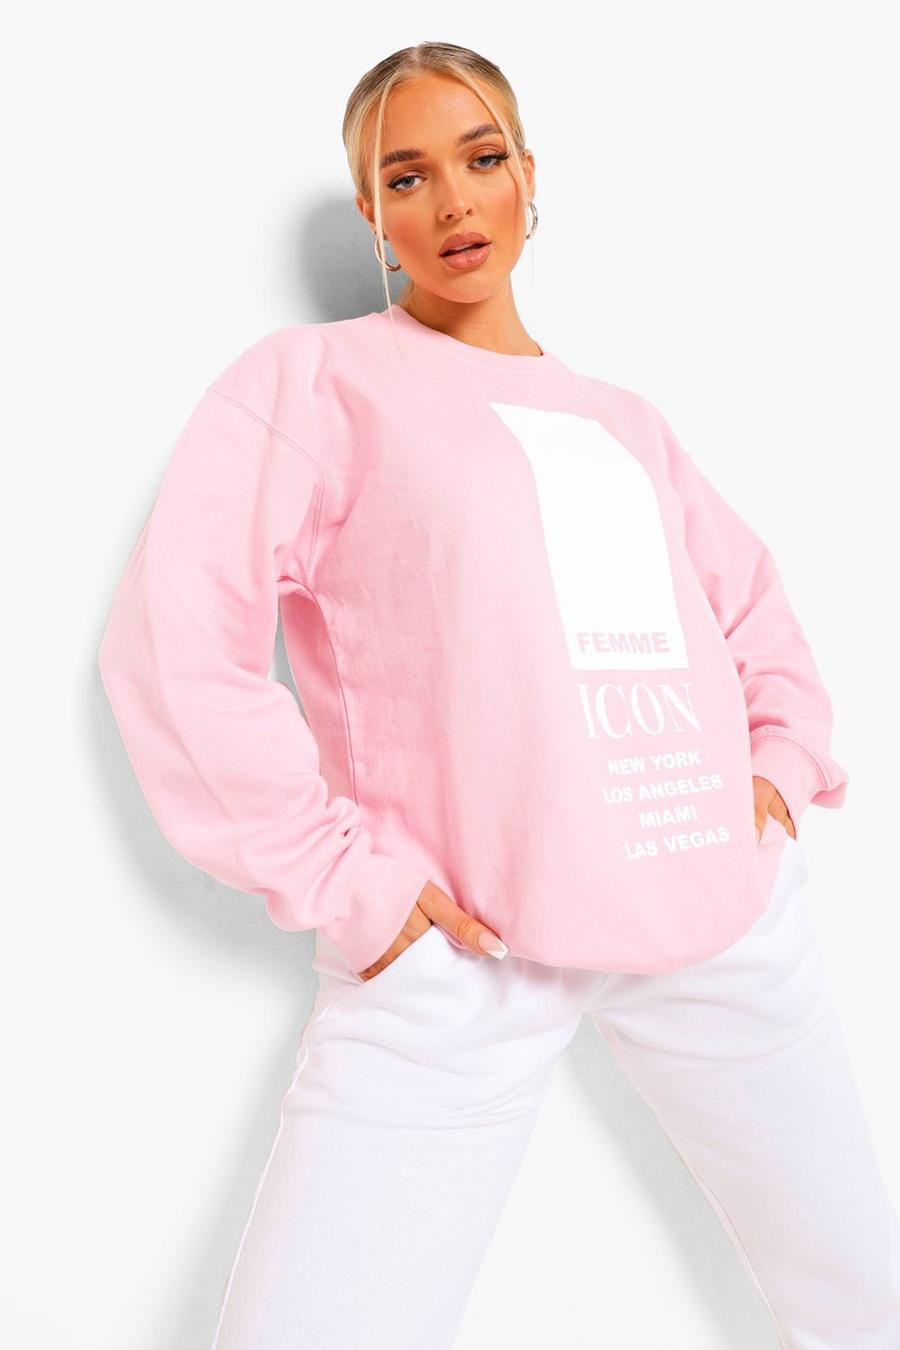 Baby pink Petite 'Femme Icon' Oversized Sweatshirt image number 1